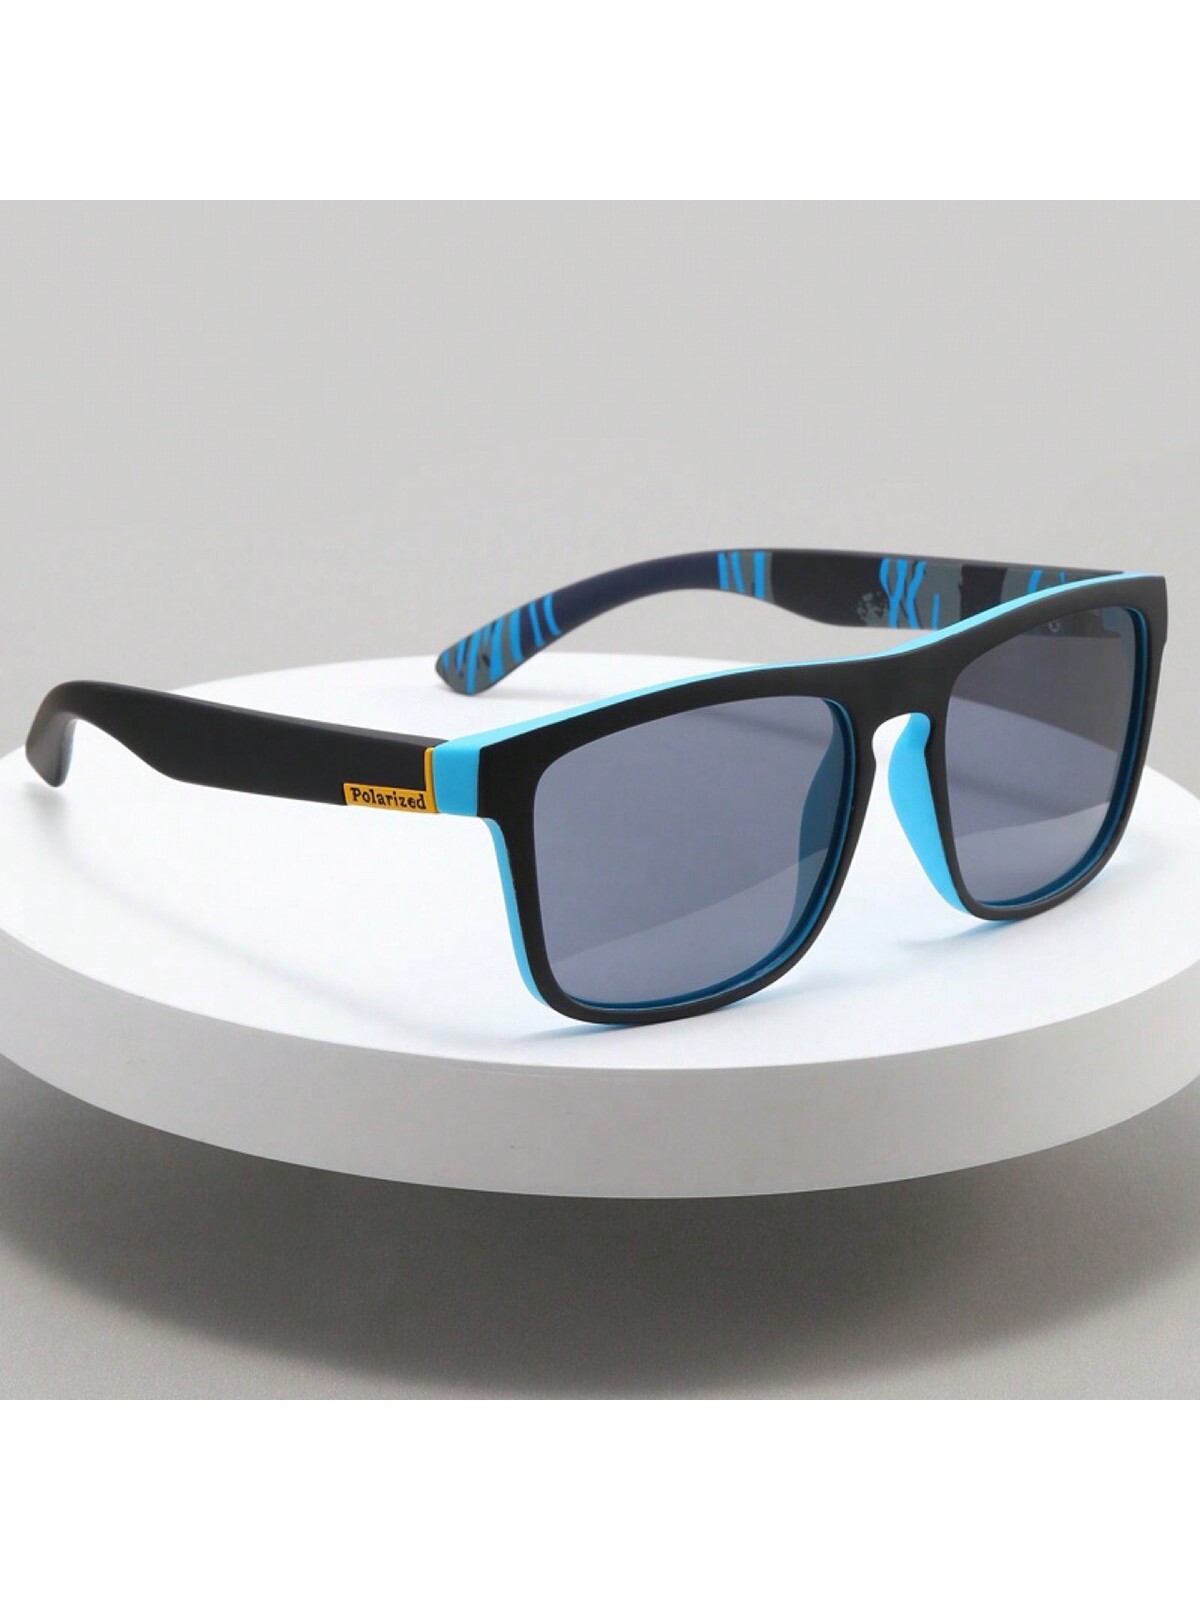 Поляризованные солнцезащитные очки D731 для спорта солнцезащитные очки для мотокросса очки для езды на мотоцикле спортивные очки для езды на открытом воздухе внедорожник мотовездеход обо